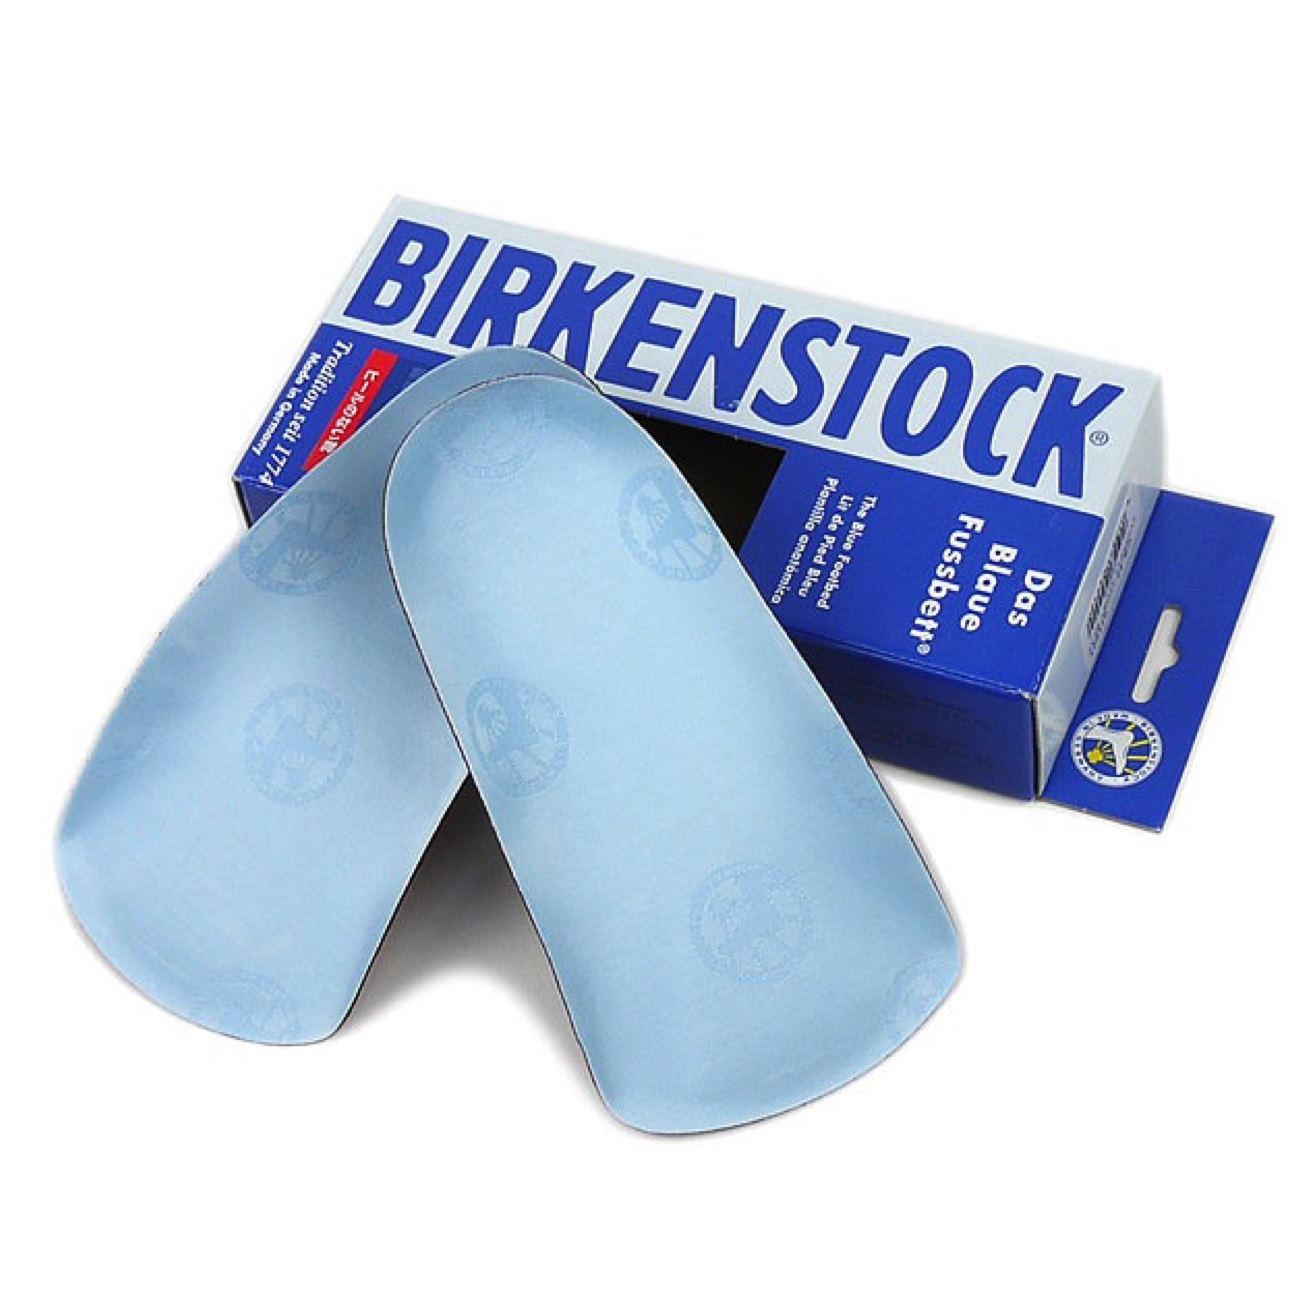 birkenstock normal fit